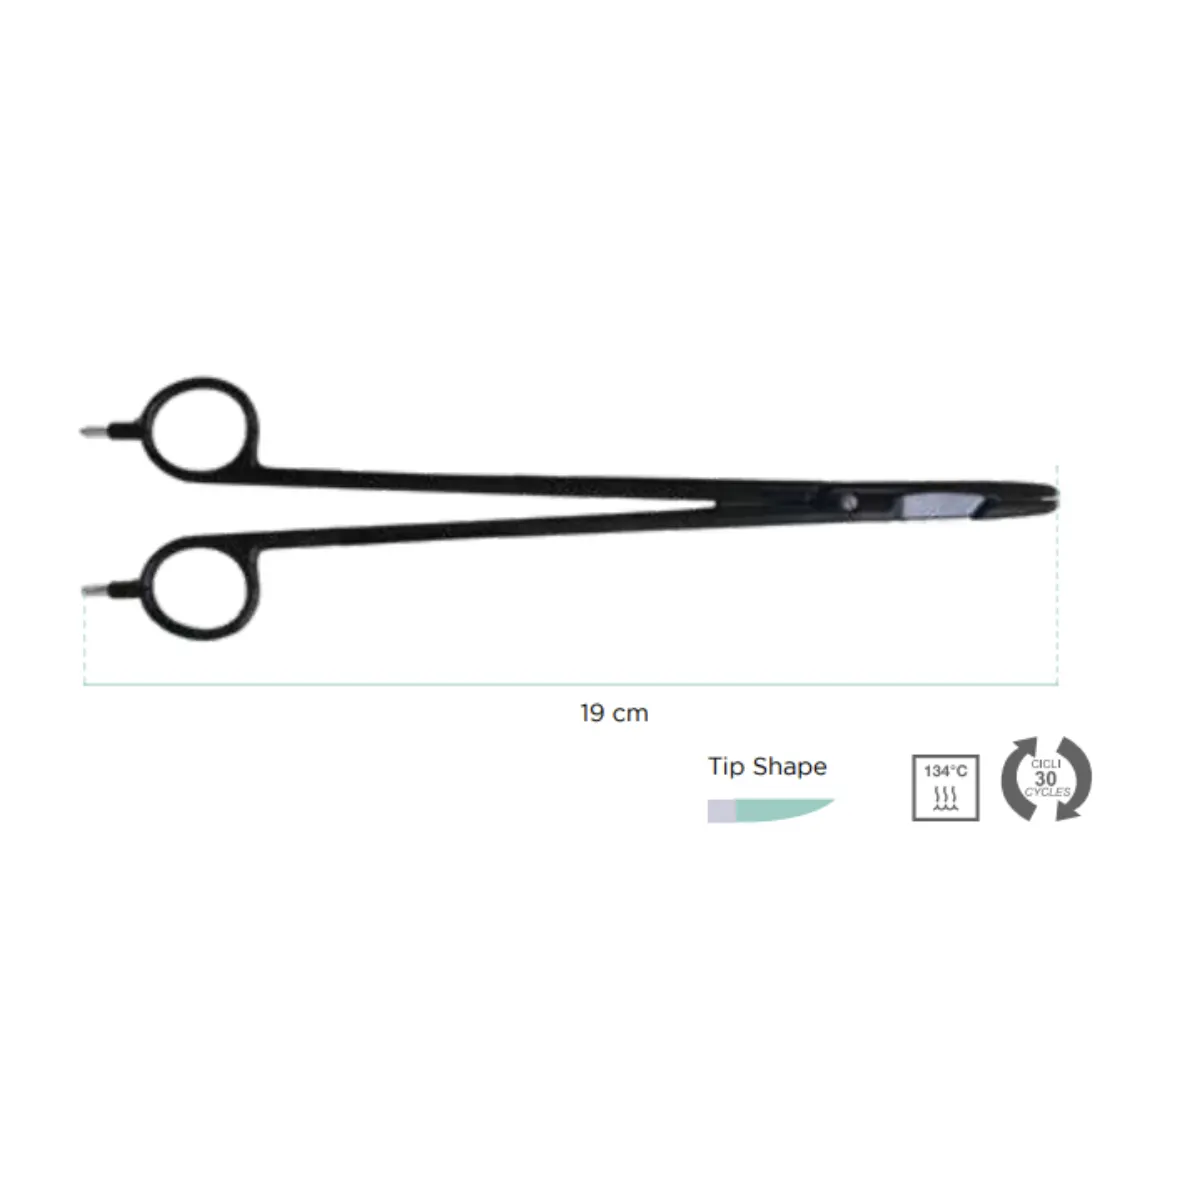 Fórceps bipolar de ponta para cirurgia - 19cm Clamp Scissors | Esterilidade garantida para operações seguras